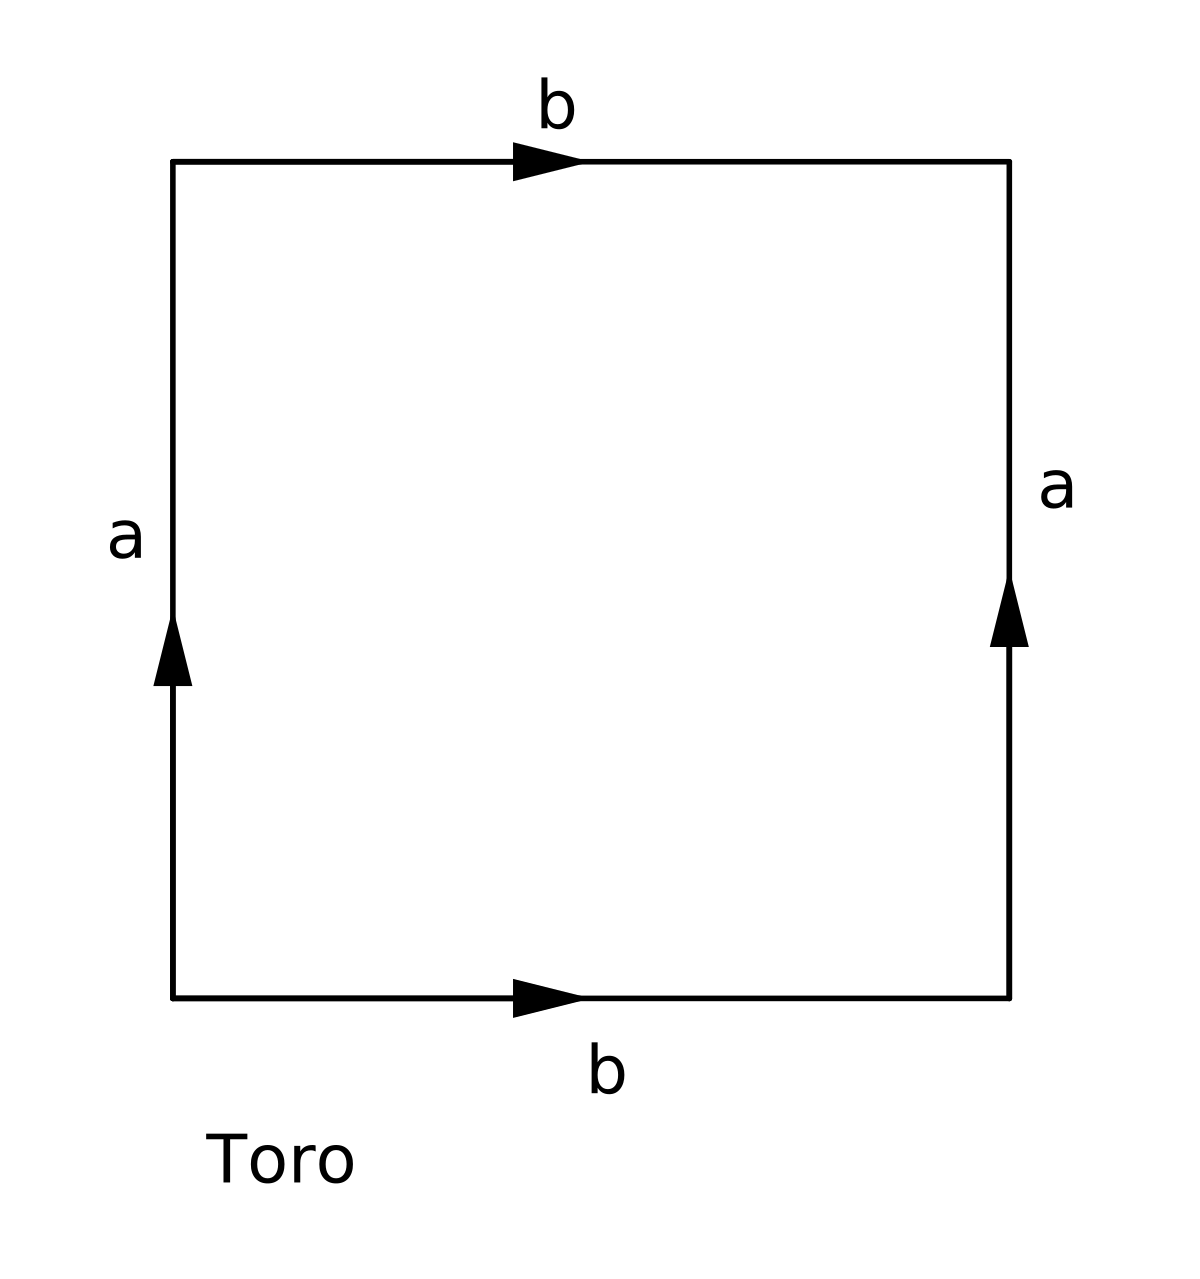 File:Triangulação do Toro.svg - Wikimedia Commons